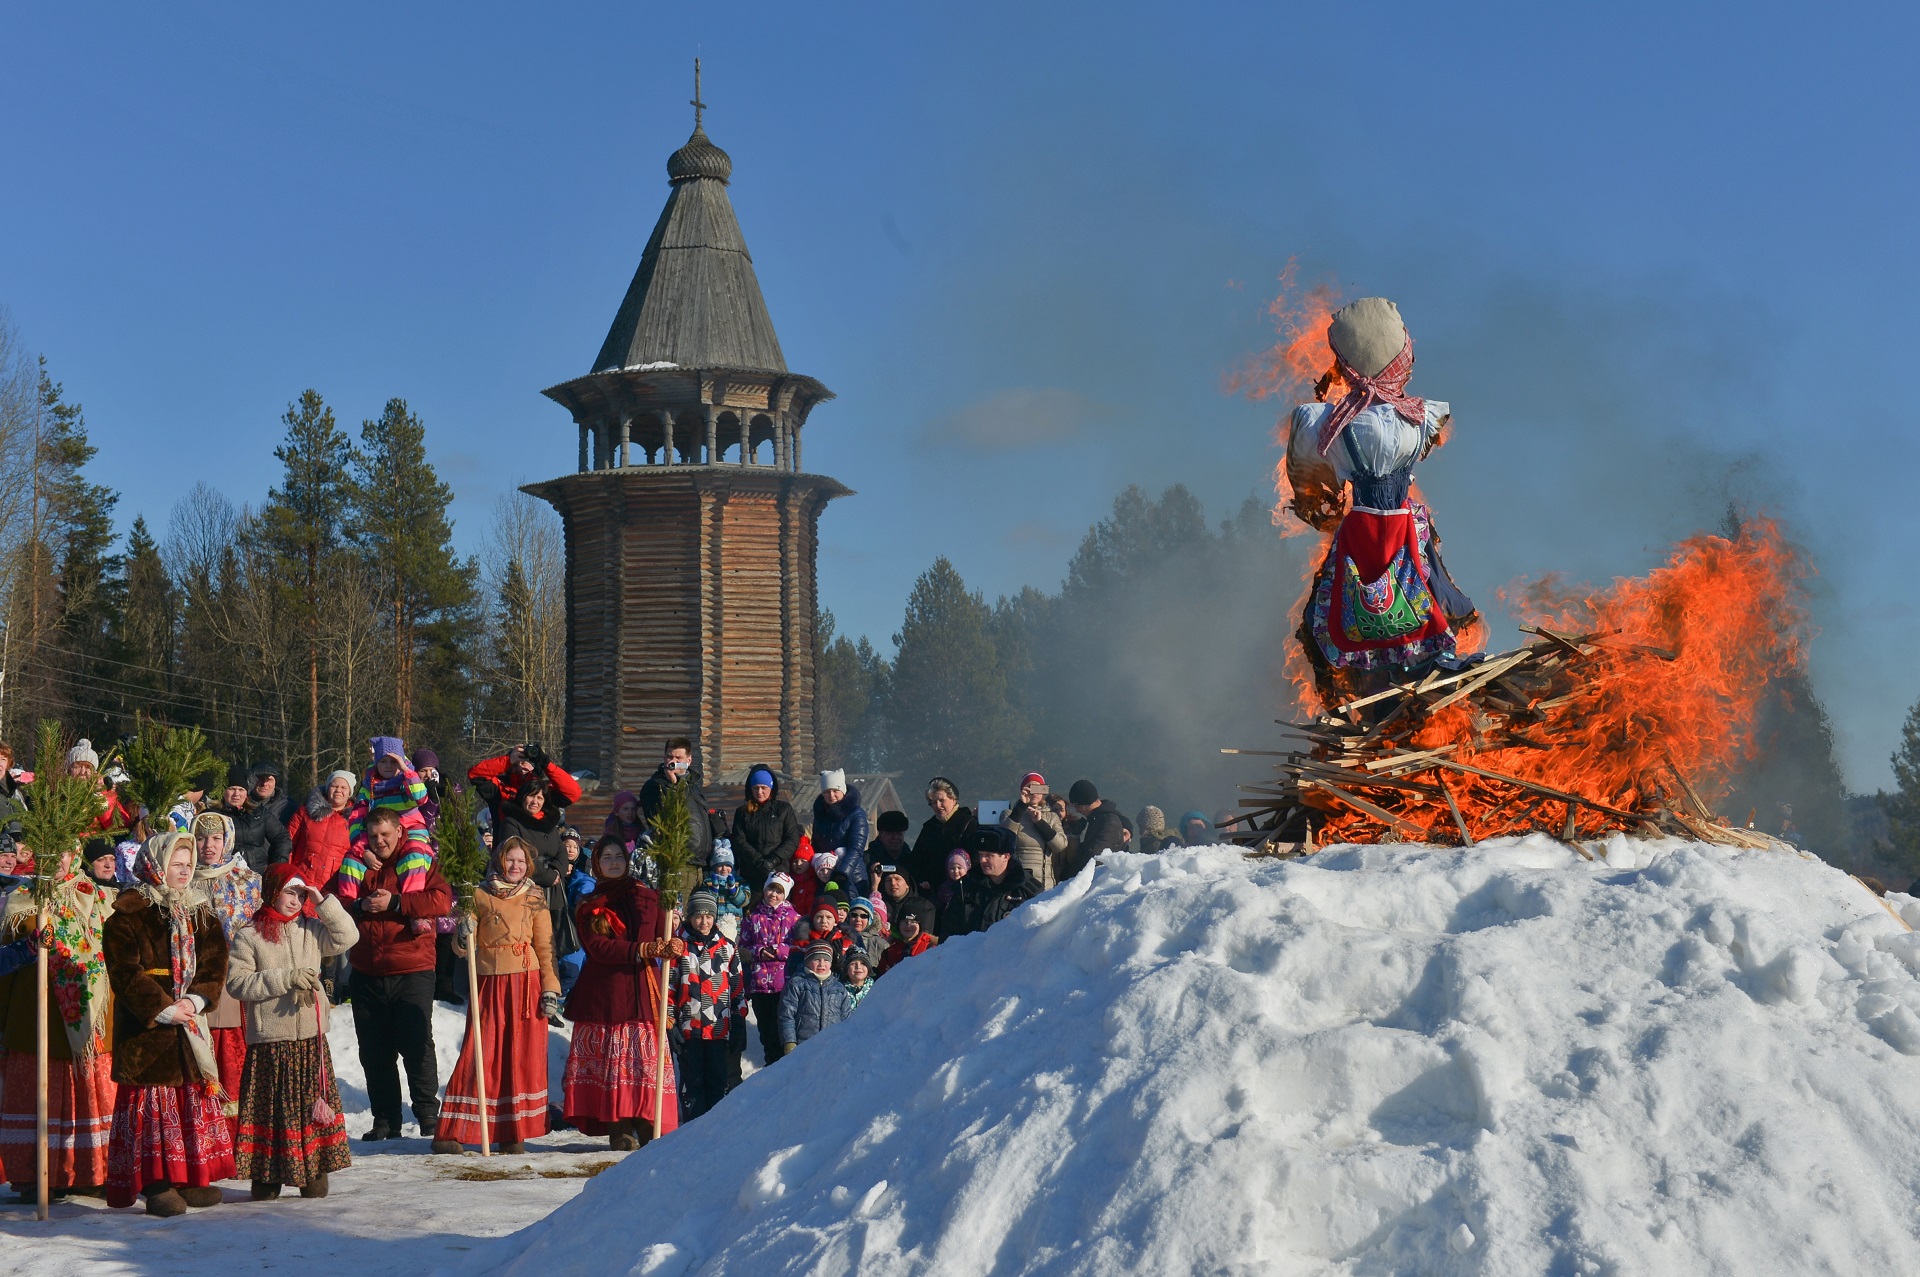 2806368 03/13/2016 Burning an effigy of winter during Maslenitsa festival at the Malye Korely Museum of Wooden Architecture and Folk Art, in the Arkhangelsk region. Vladimir Trefilov/Sputnik